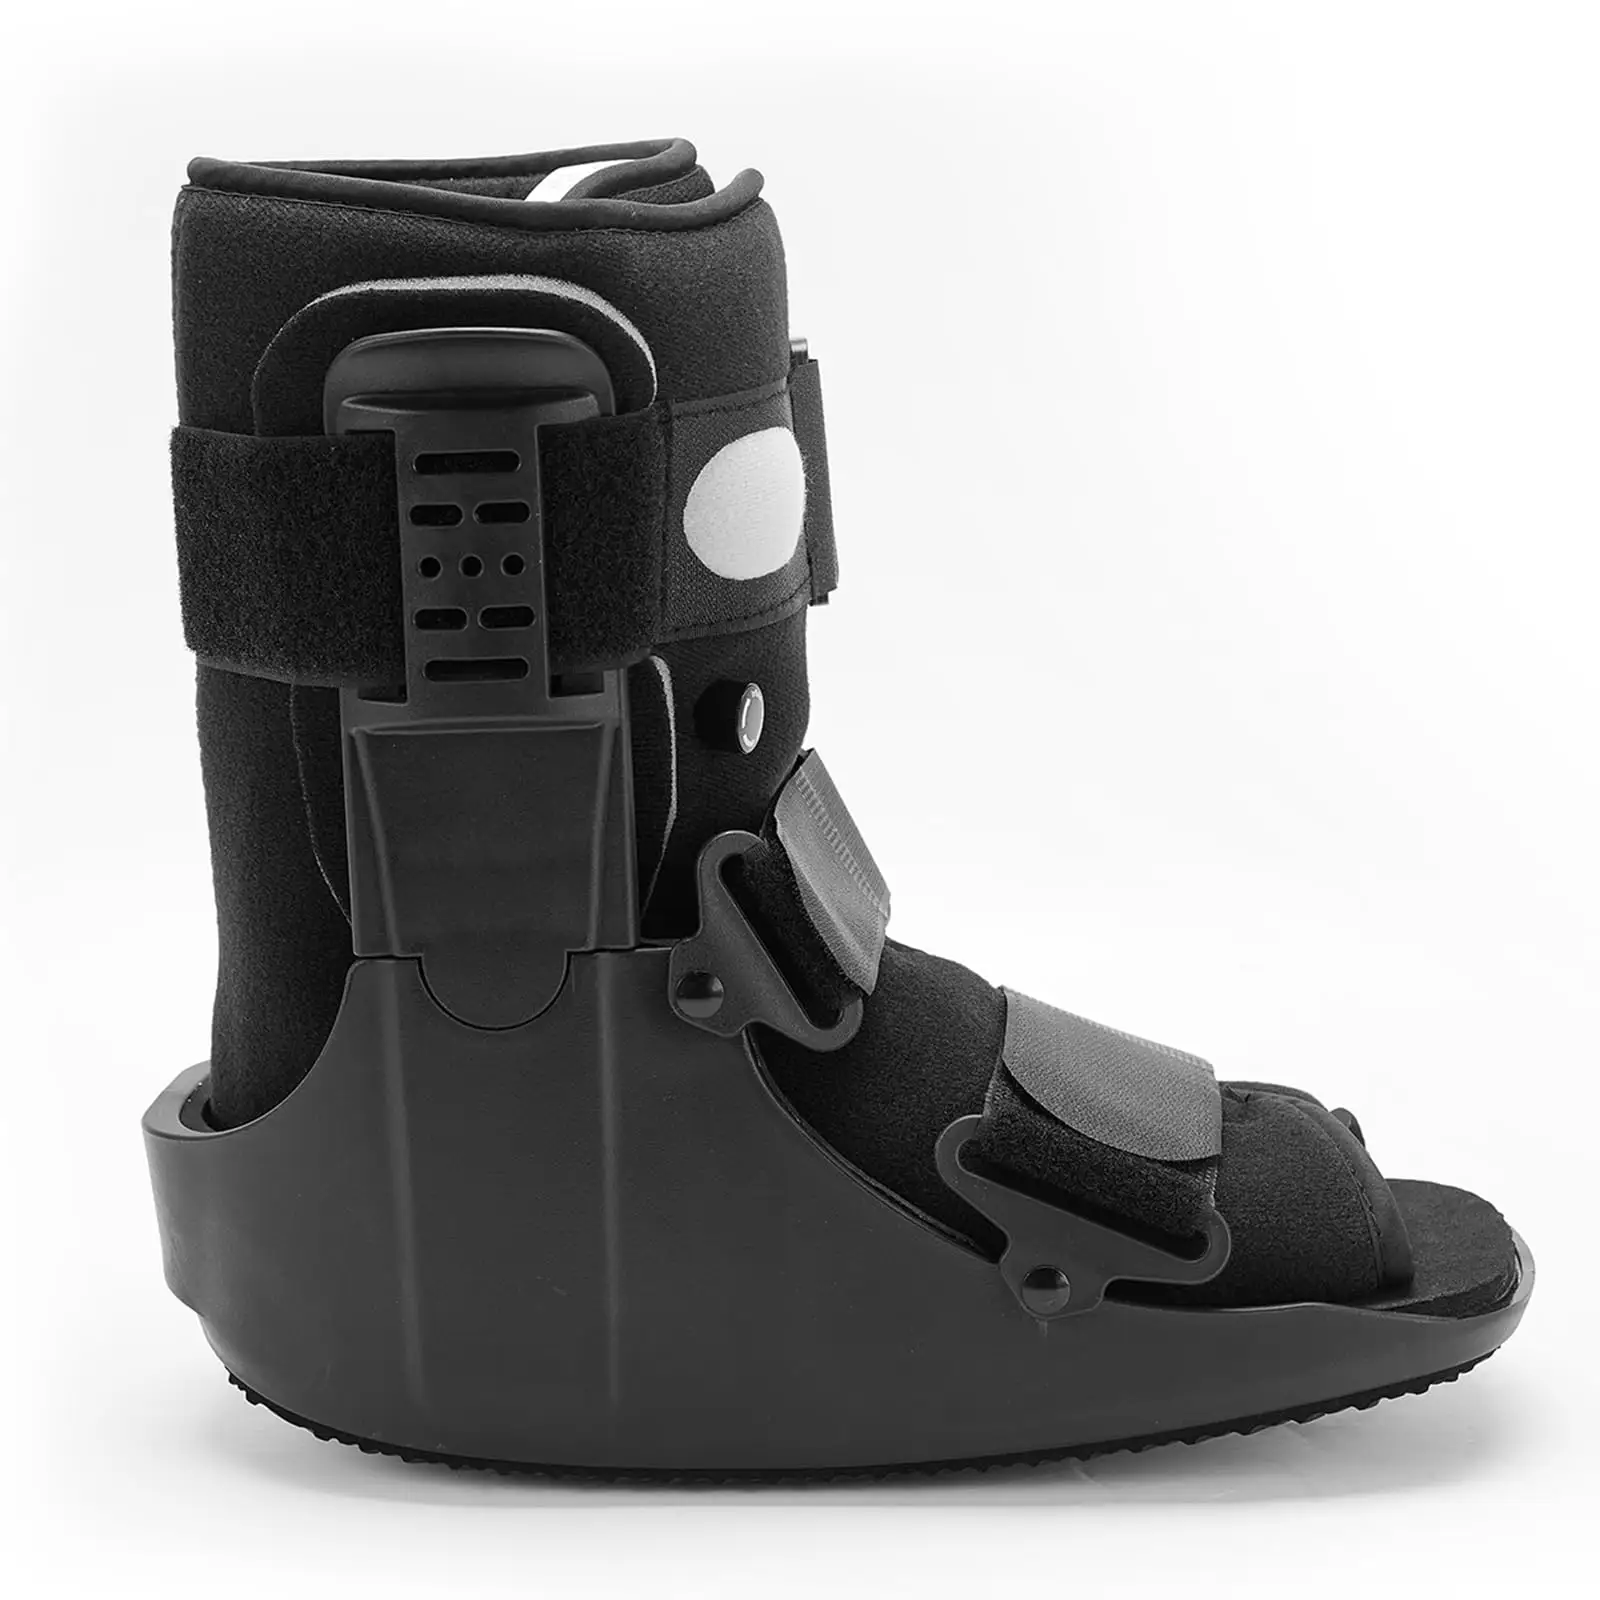 TJ-FM033 ayak bileği desteği askı Brace hava kam Walker kırılma Boot şişme yürüyüşe ortopedik ayak bileği Brace